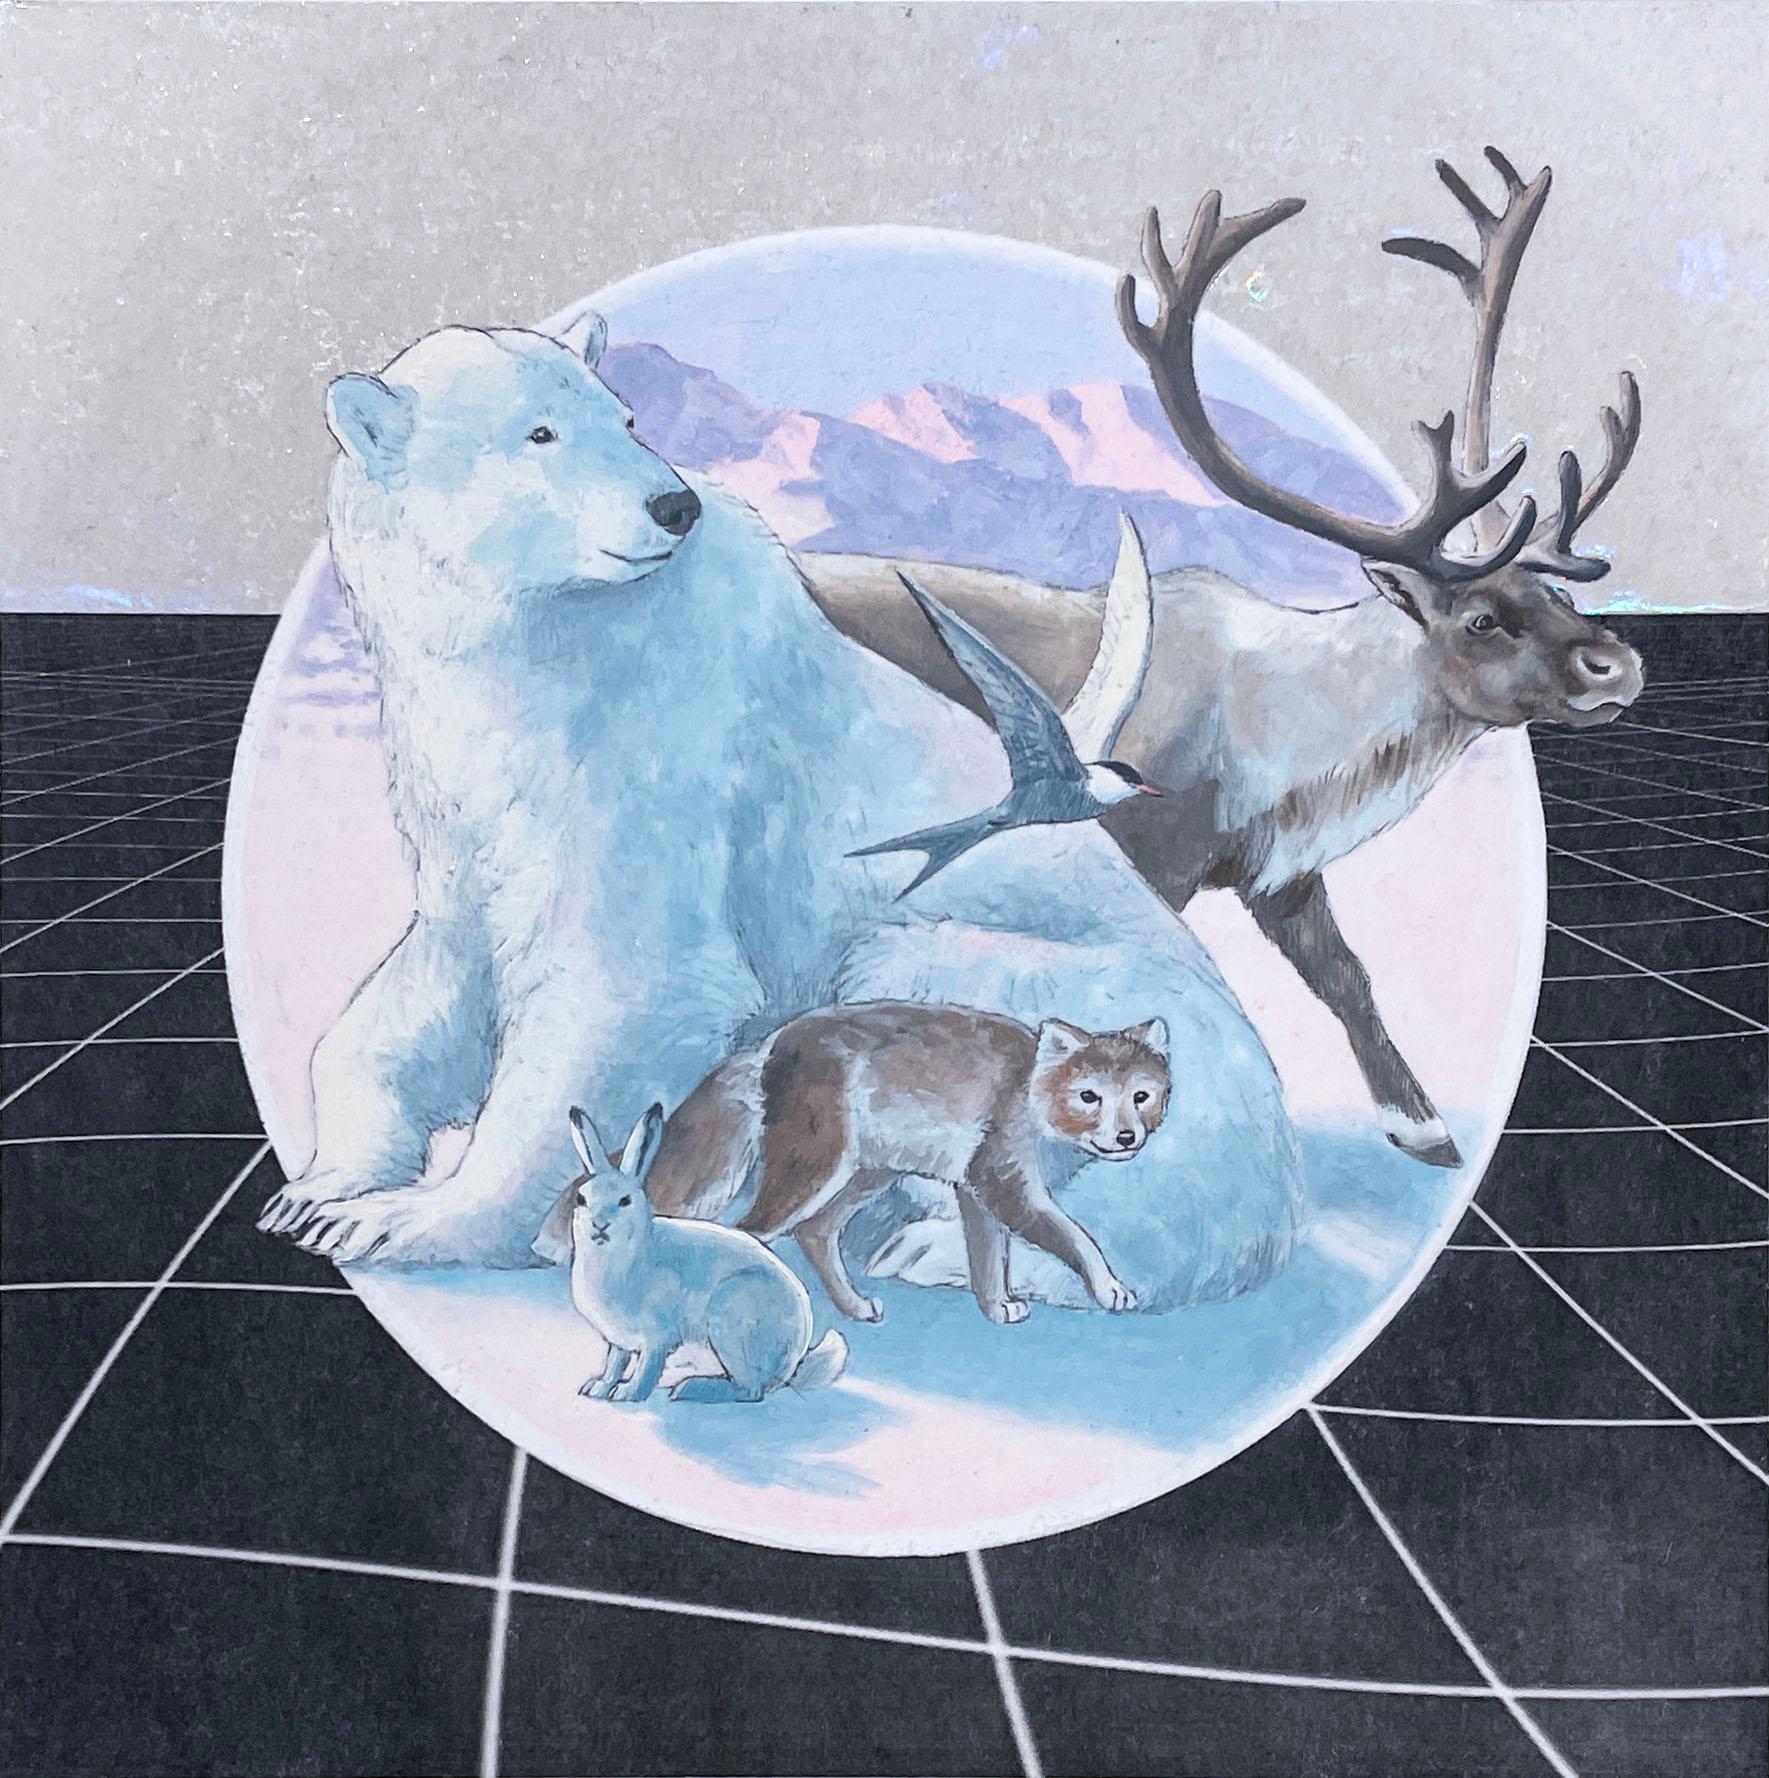 Tundra arctique (2019), peinture à l'huile, écosystème, animaux, pastels, faune polaire - Contemporain Painting par Alexis Kandra